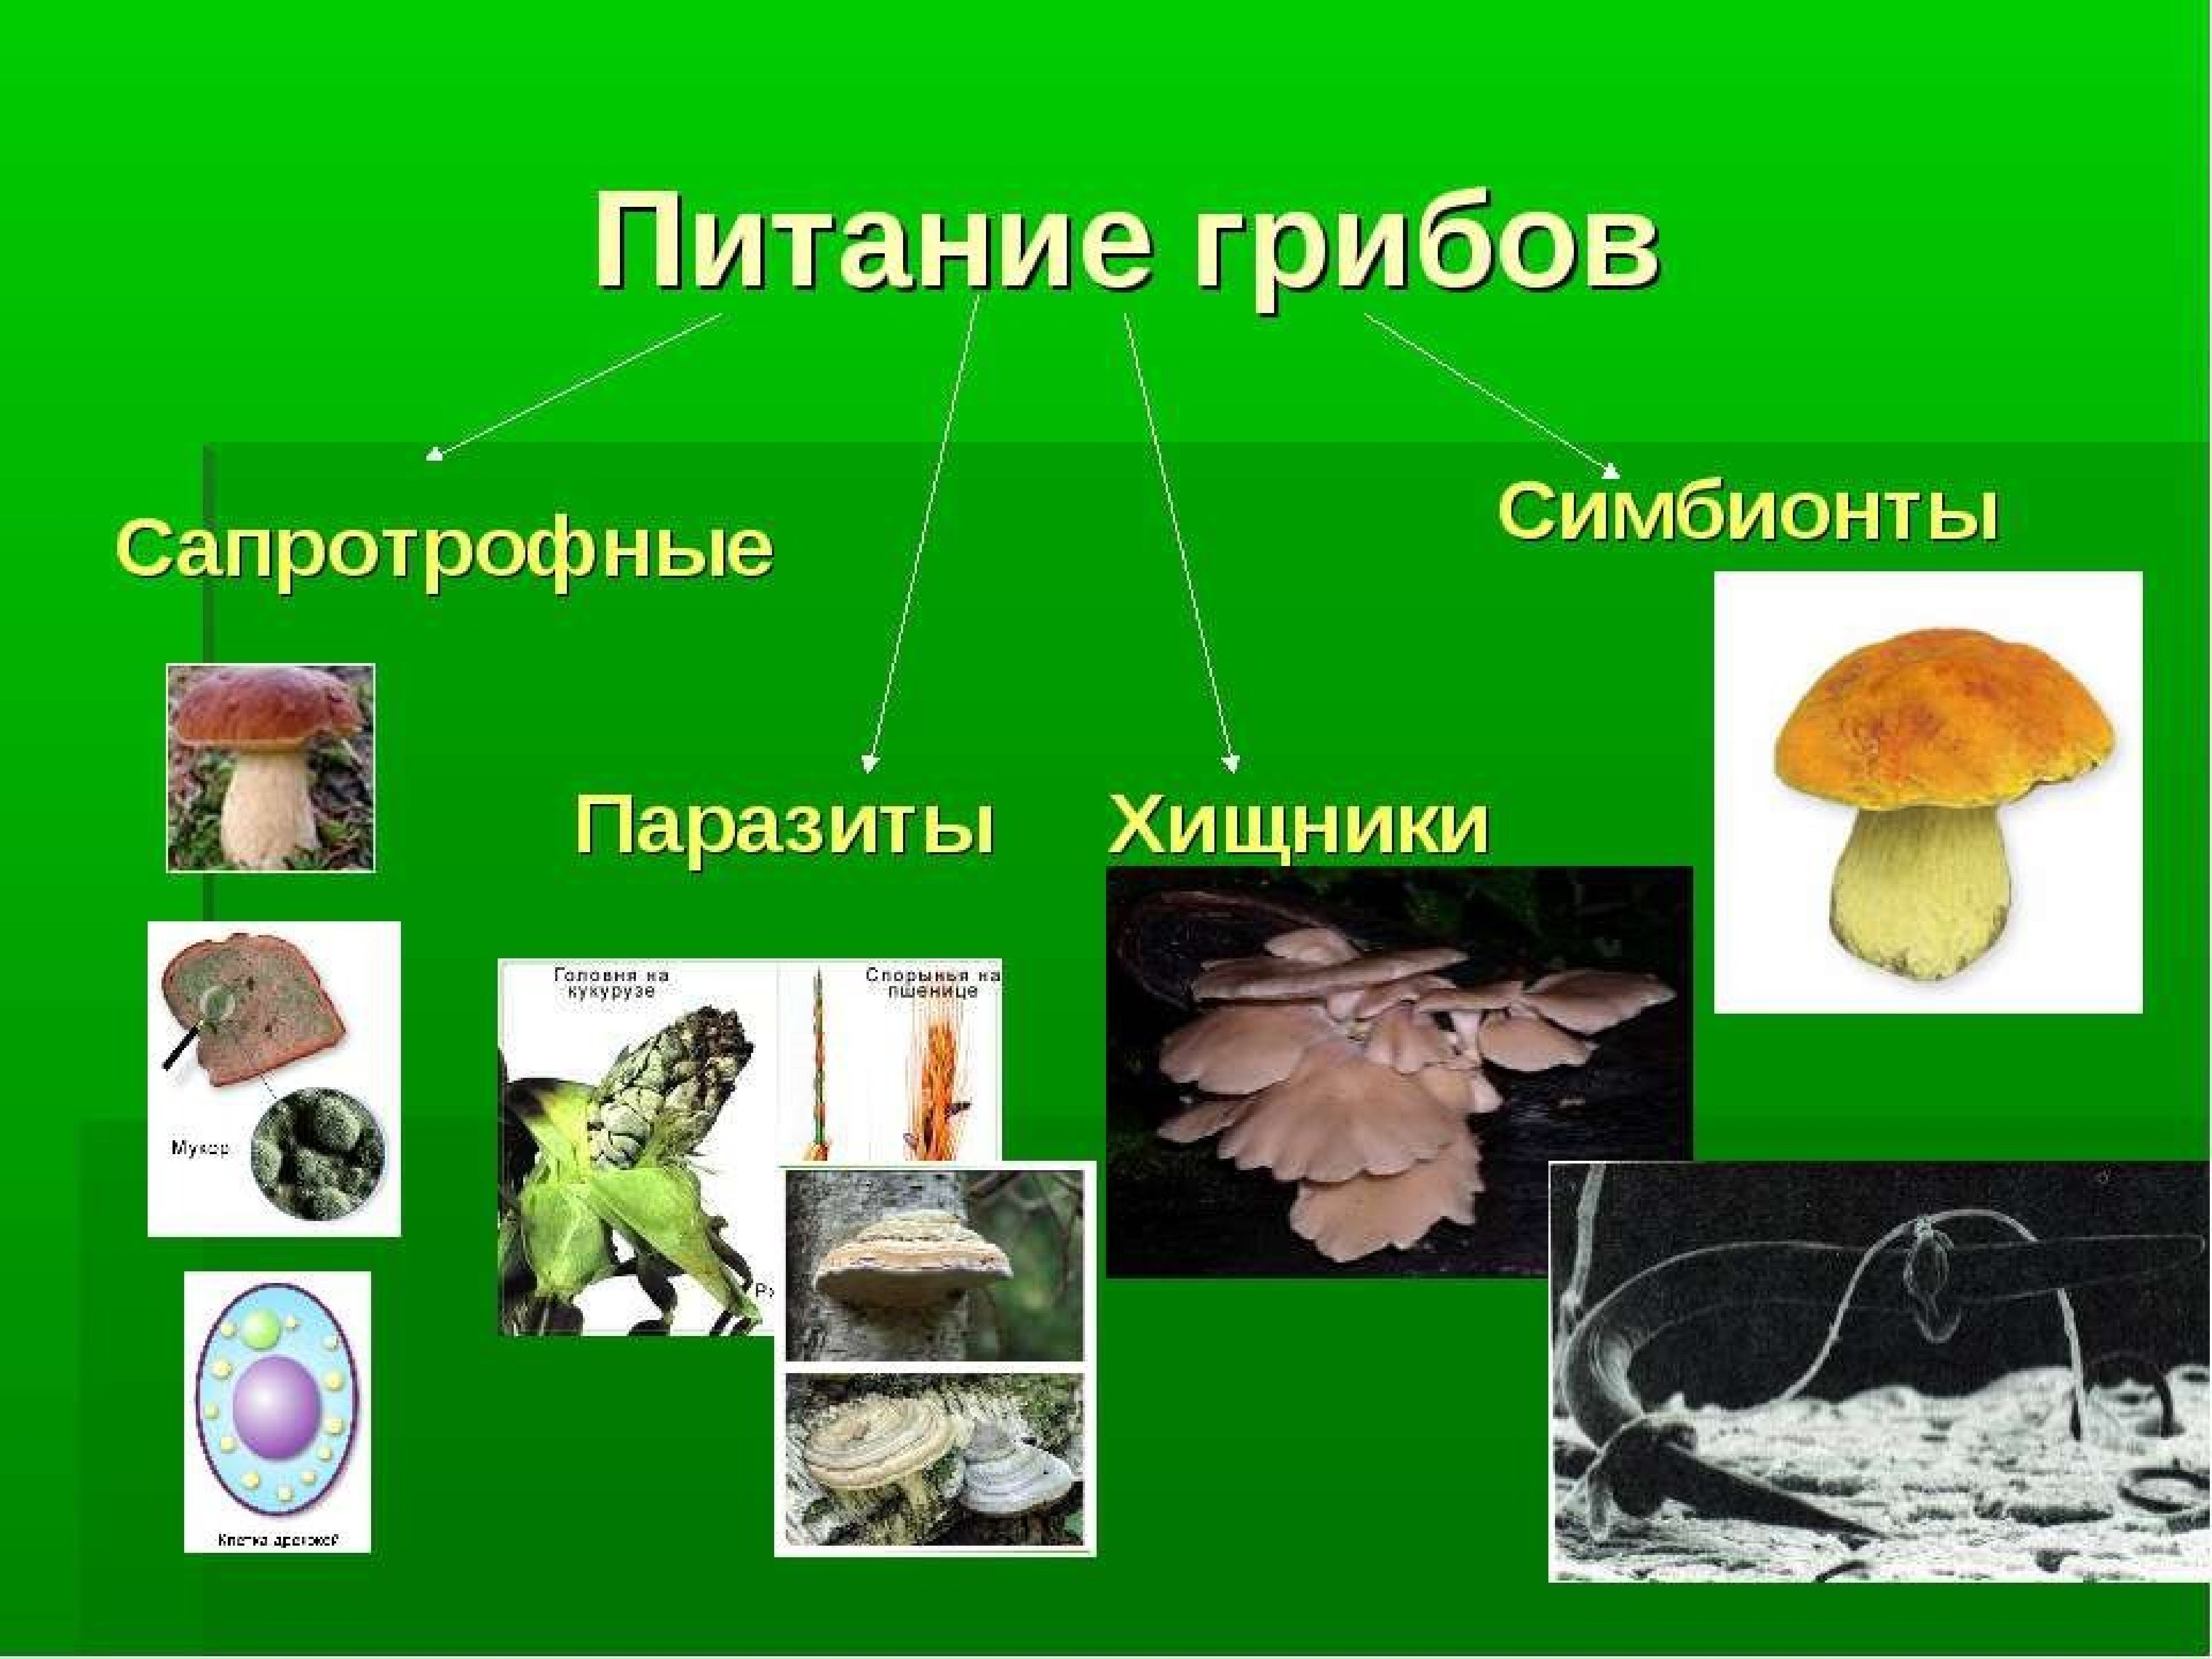 Шляпочные грибы водоросли. Типы питания грибов сапротрофы паразиты симбионты и хищники. Типы питания грибов 5 класс биология. Схема питания грибов 6 класс. Питание грибов 5 класс.